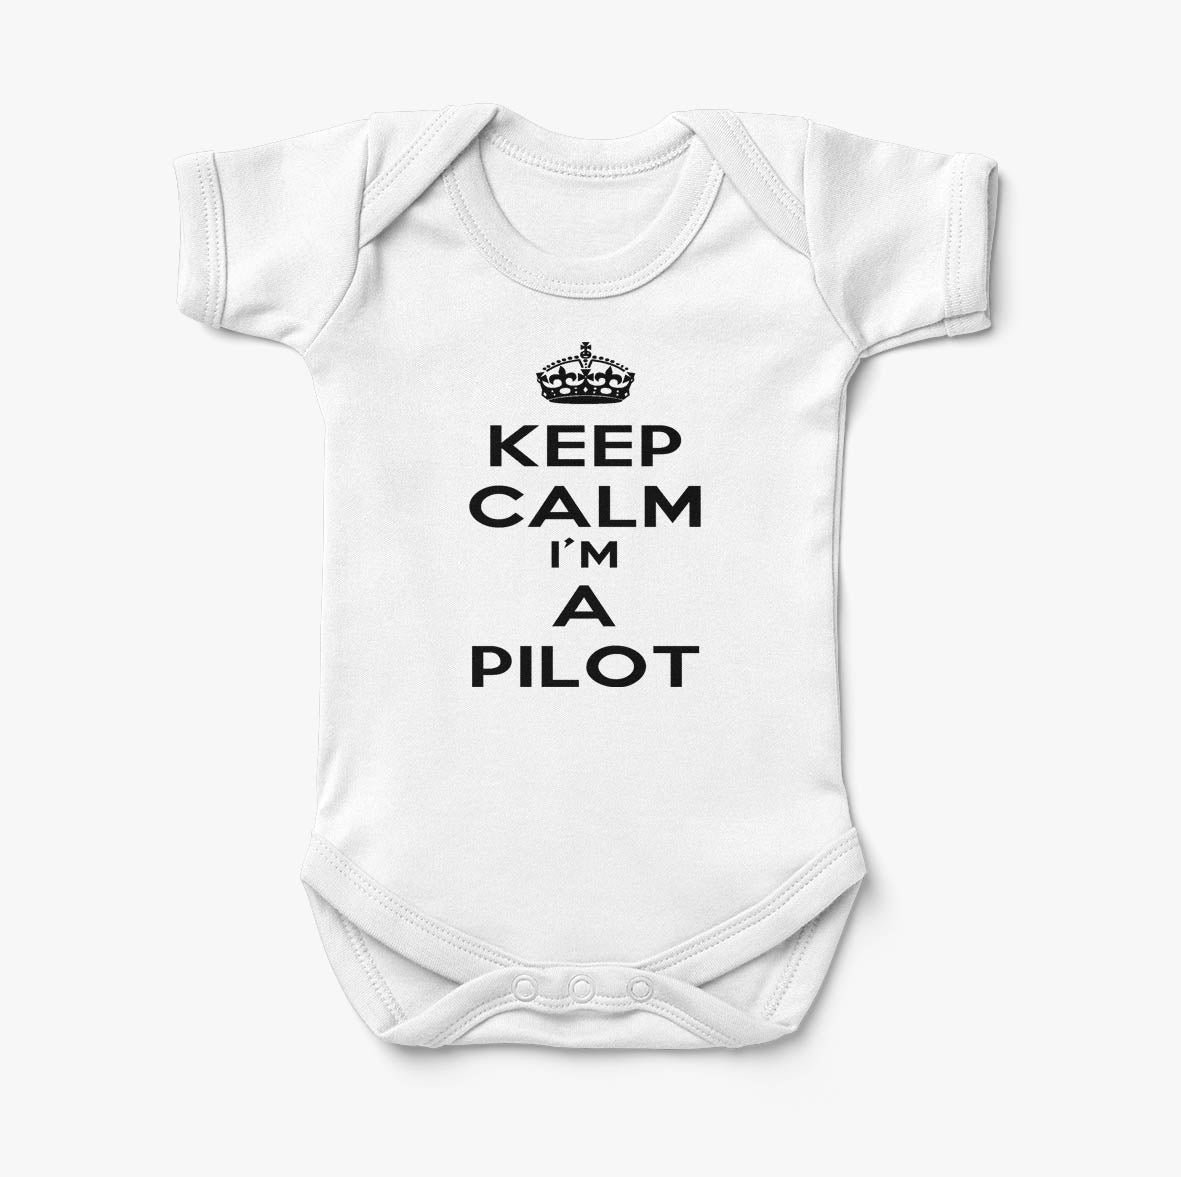 Keep Calm I'm a Pilot Designed Baby Bodysuits